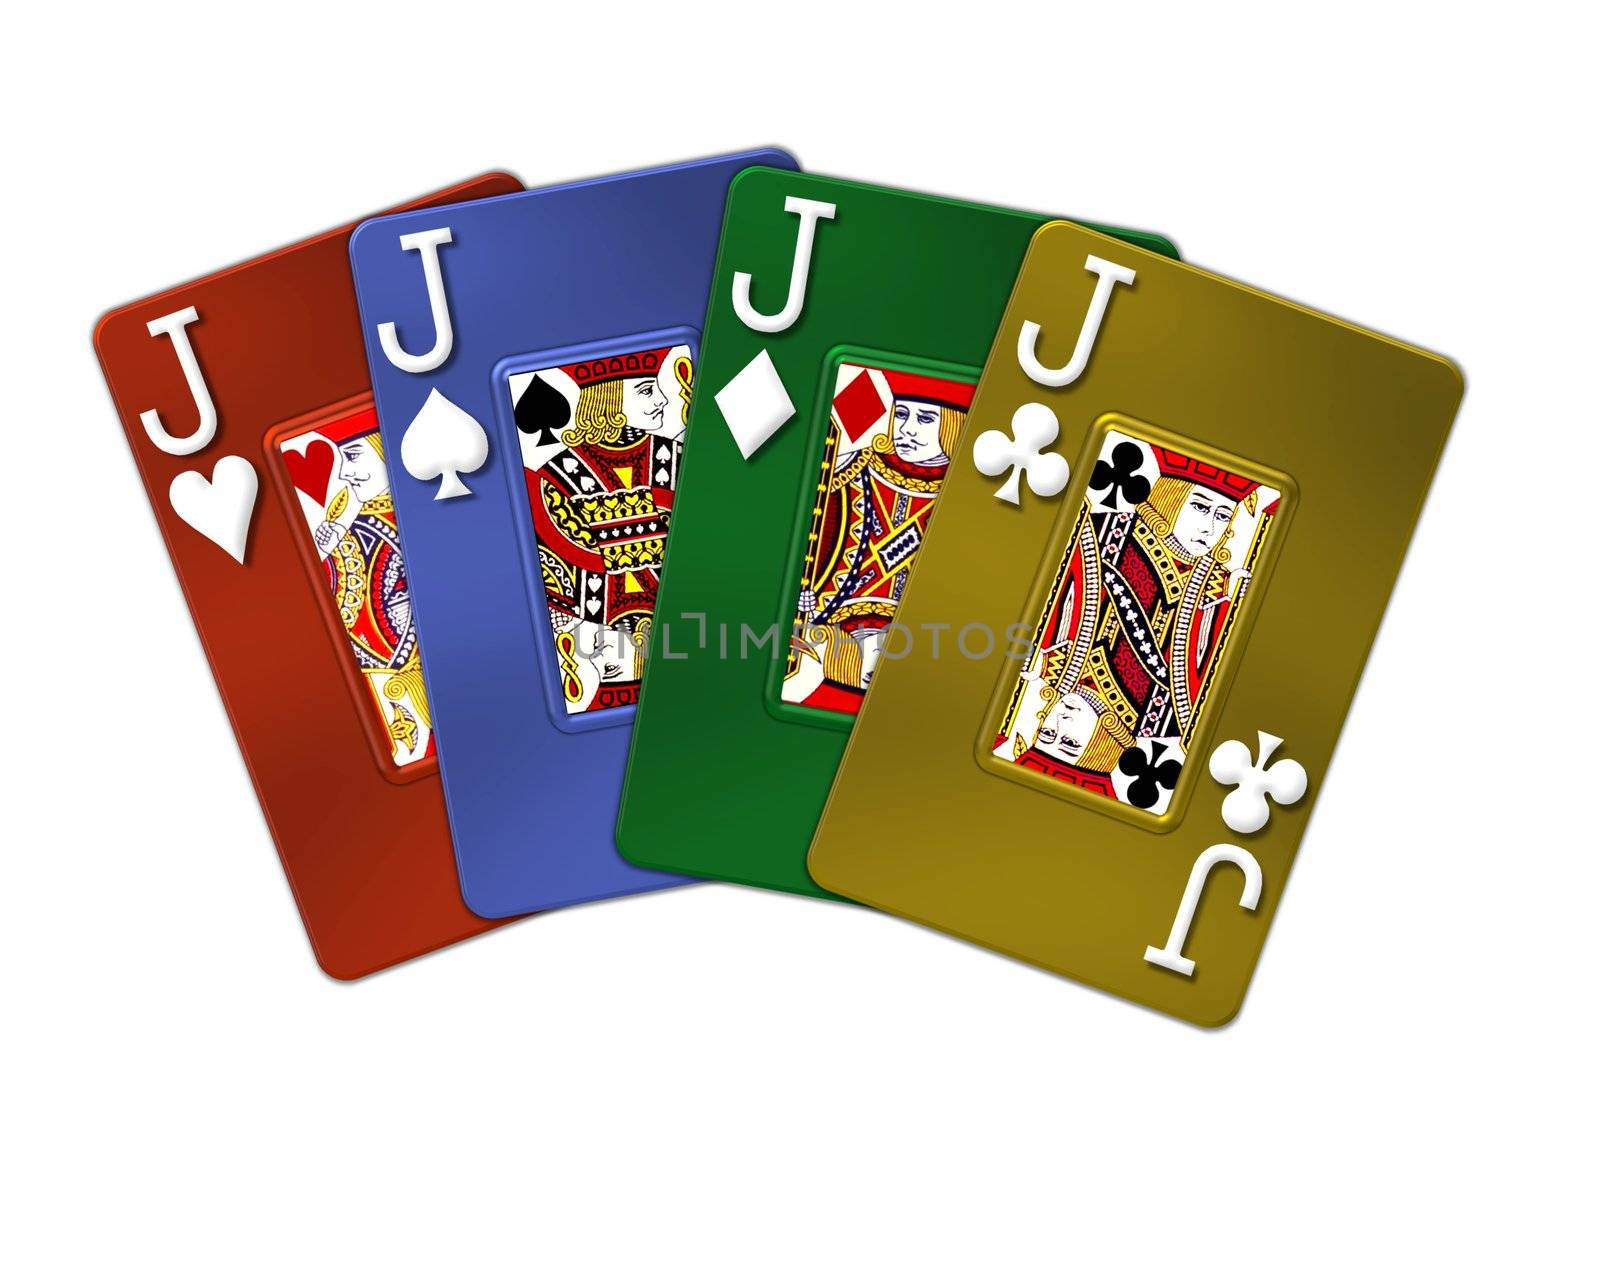 illustration of metallic poker cards - 4 of a kind jacks